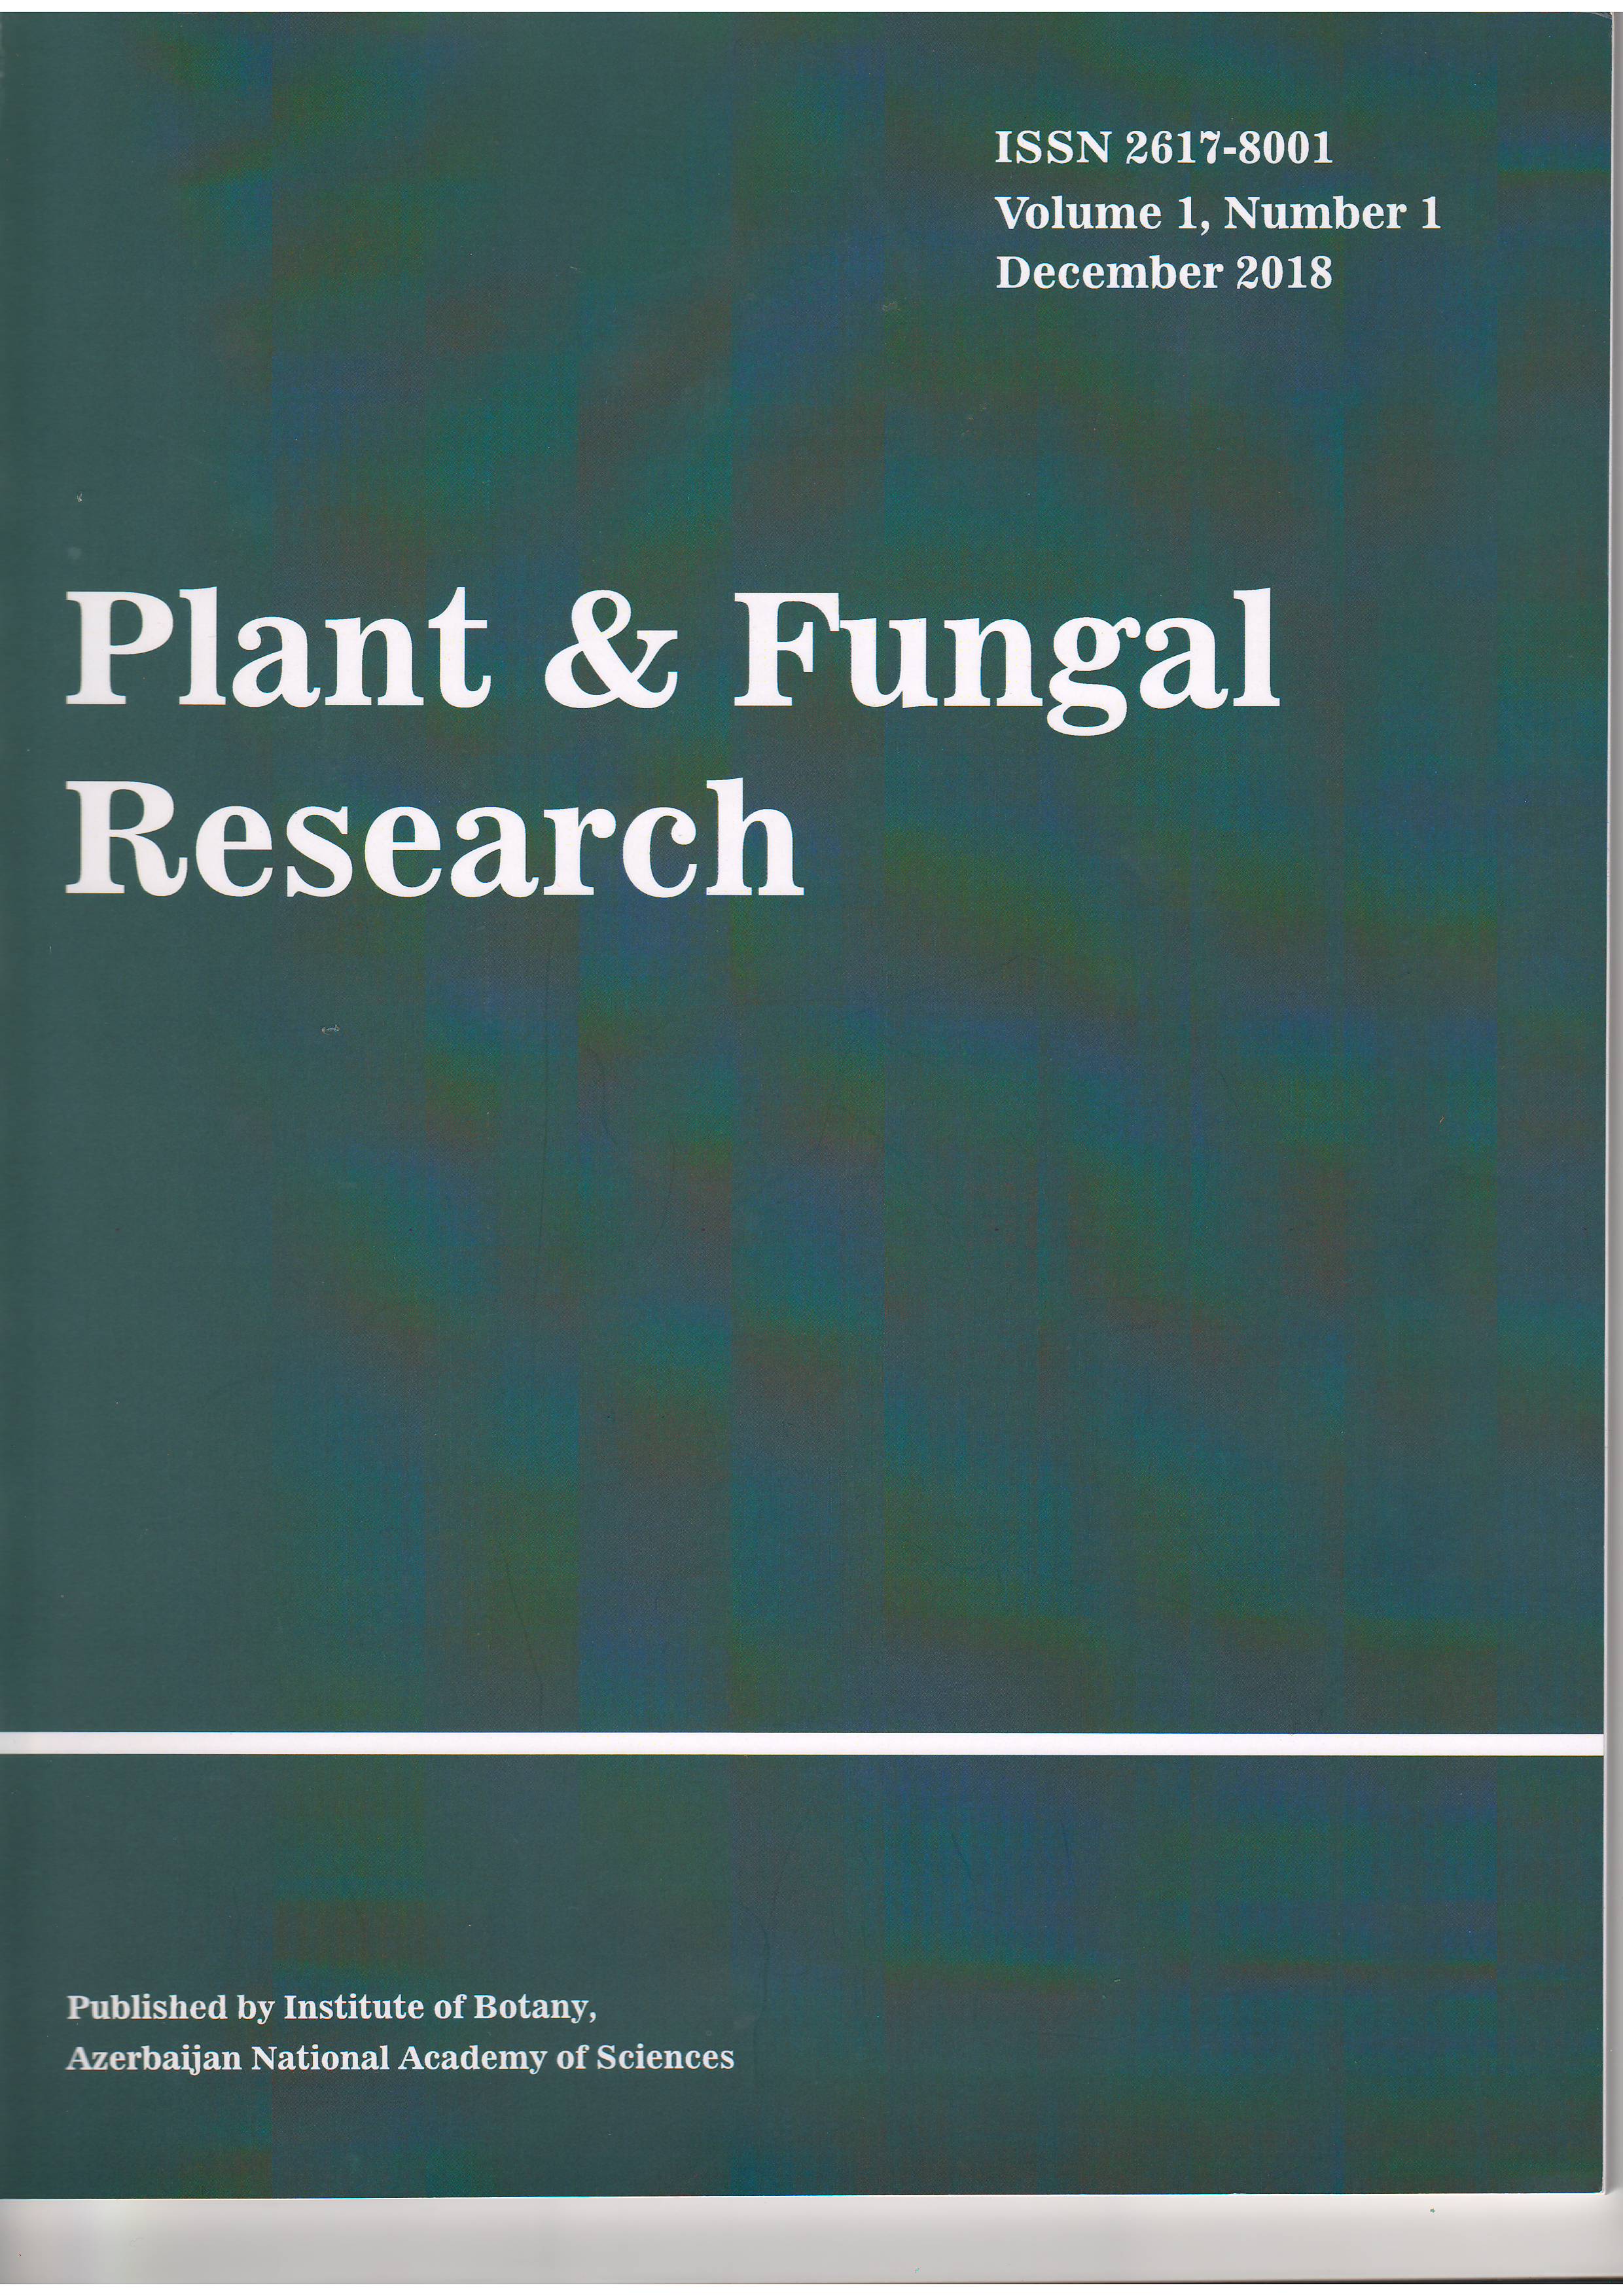 AMEA Botanika İnstitutunun “Plant & Fungal Research” adlı beynəlxalq jurnalının ilk nömrəsi çap olunub